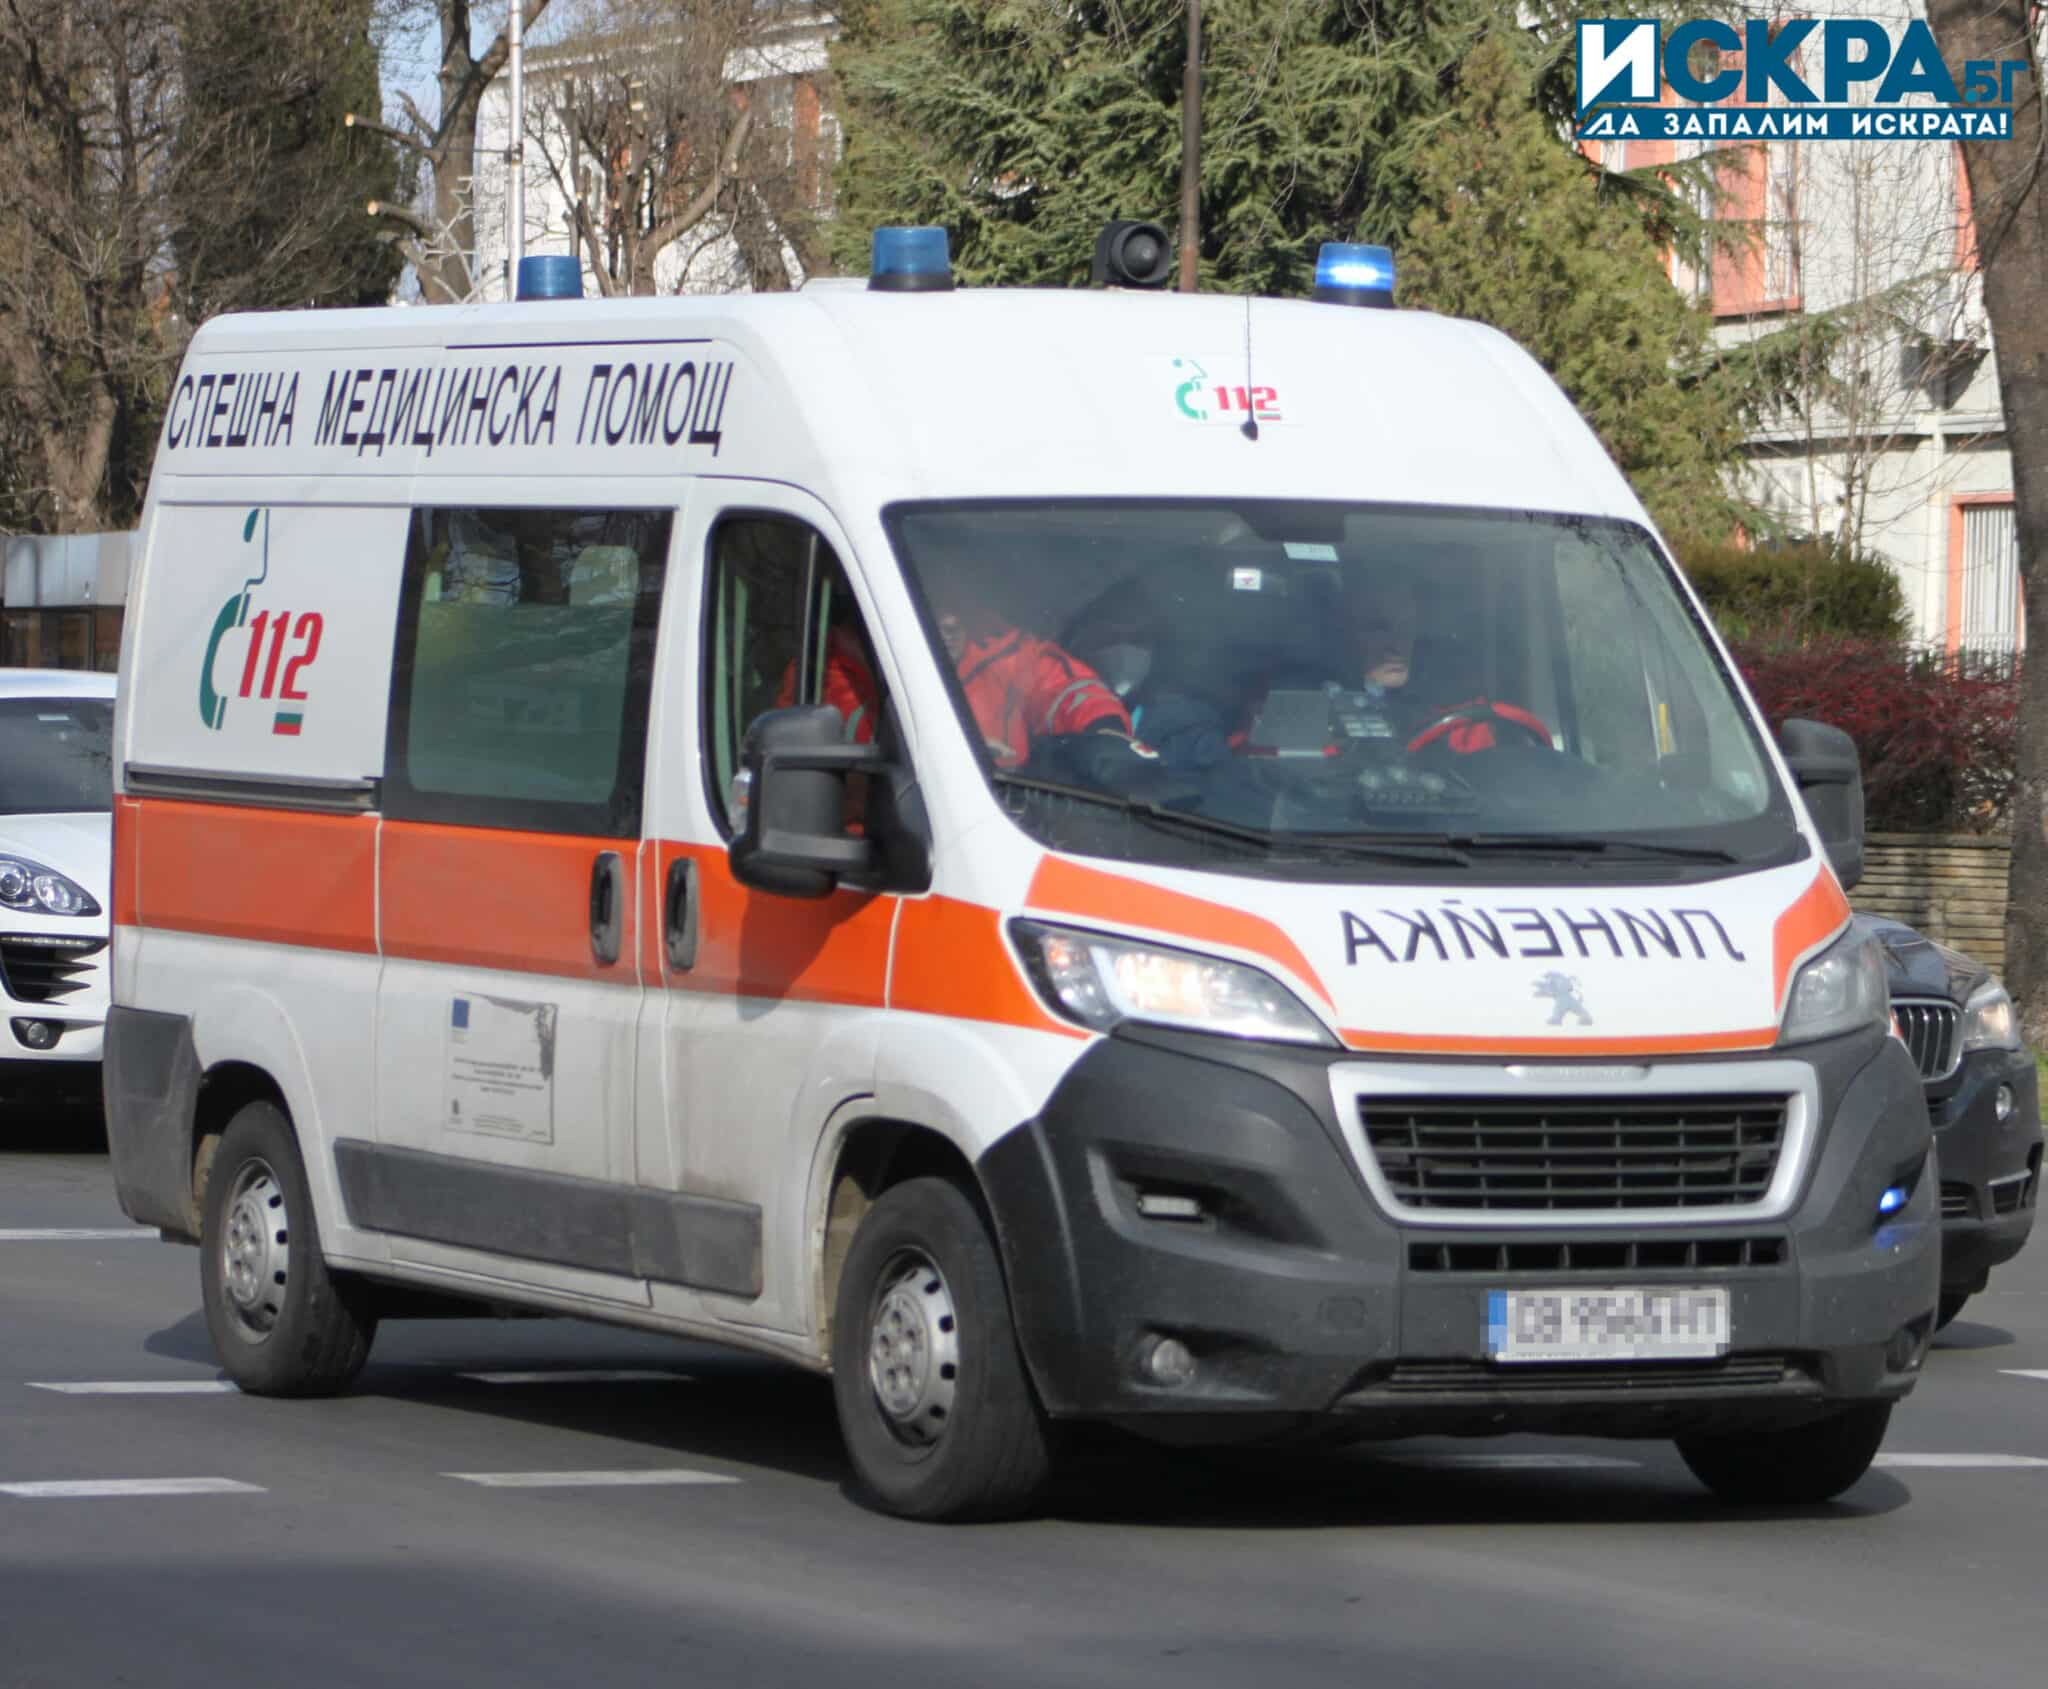 Възрастен шофьор е блъснал пешеходка в Хасково, съобщиха от полицията.
Инцидентът